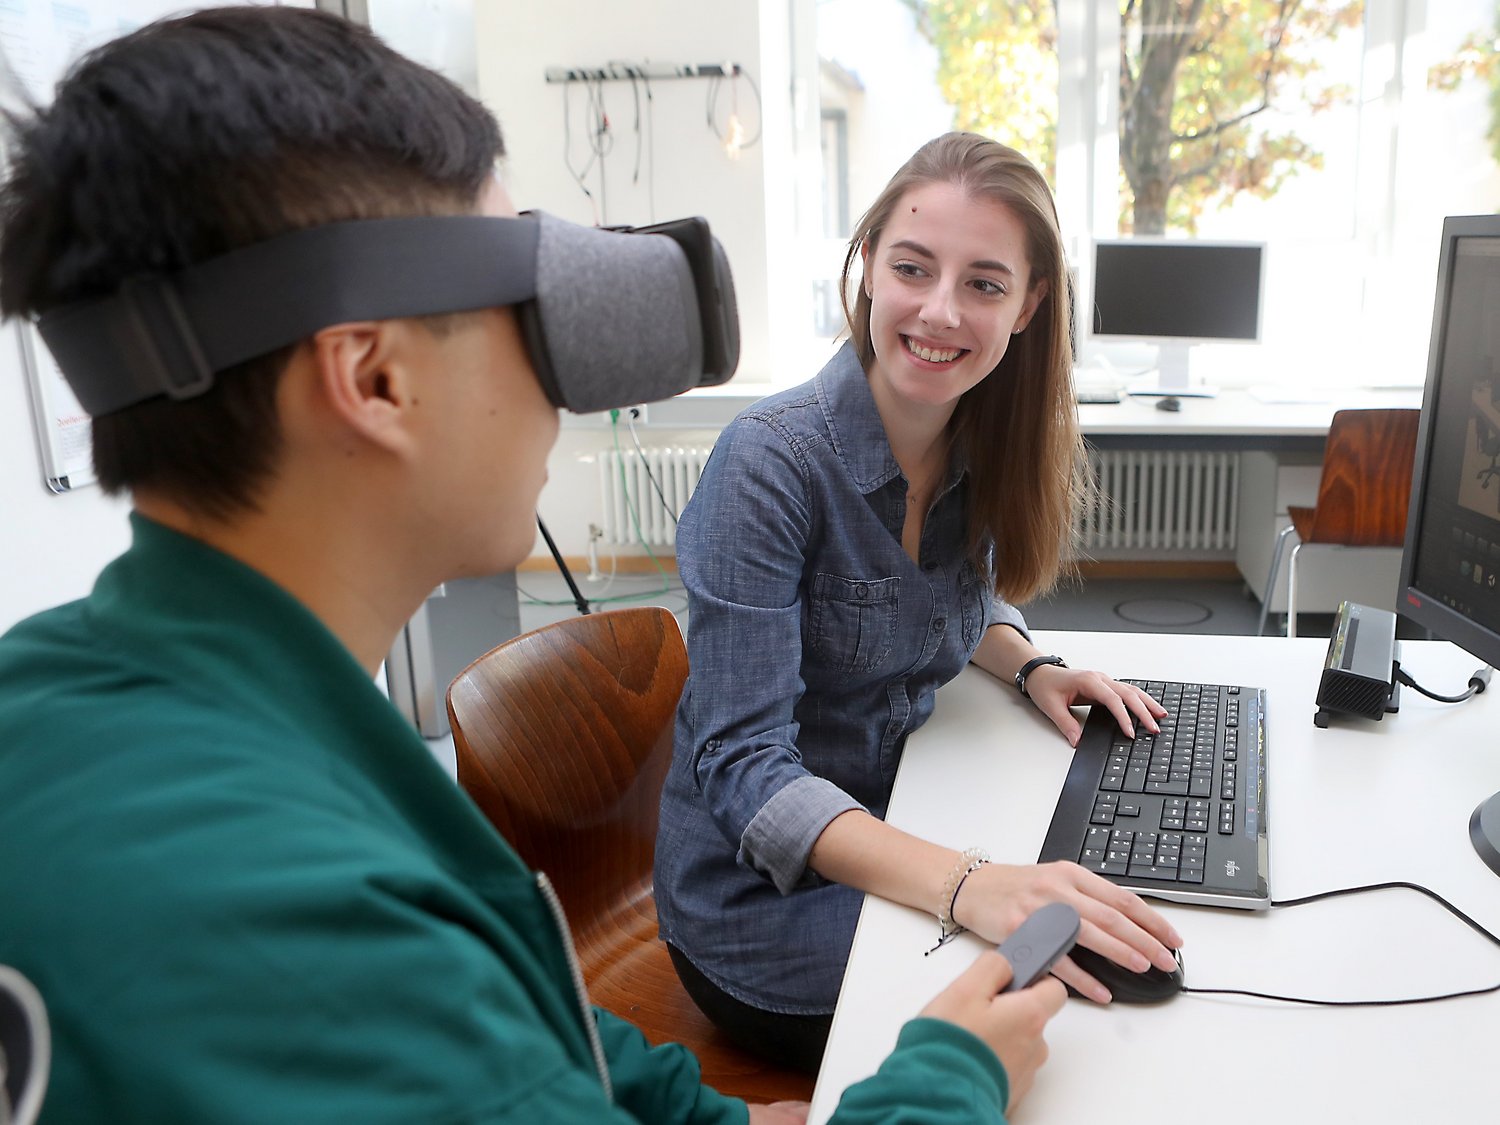 Zwei Personen sitzen vor einem PC. Eine Person trägt eine VR-Brille.